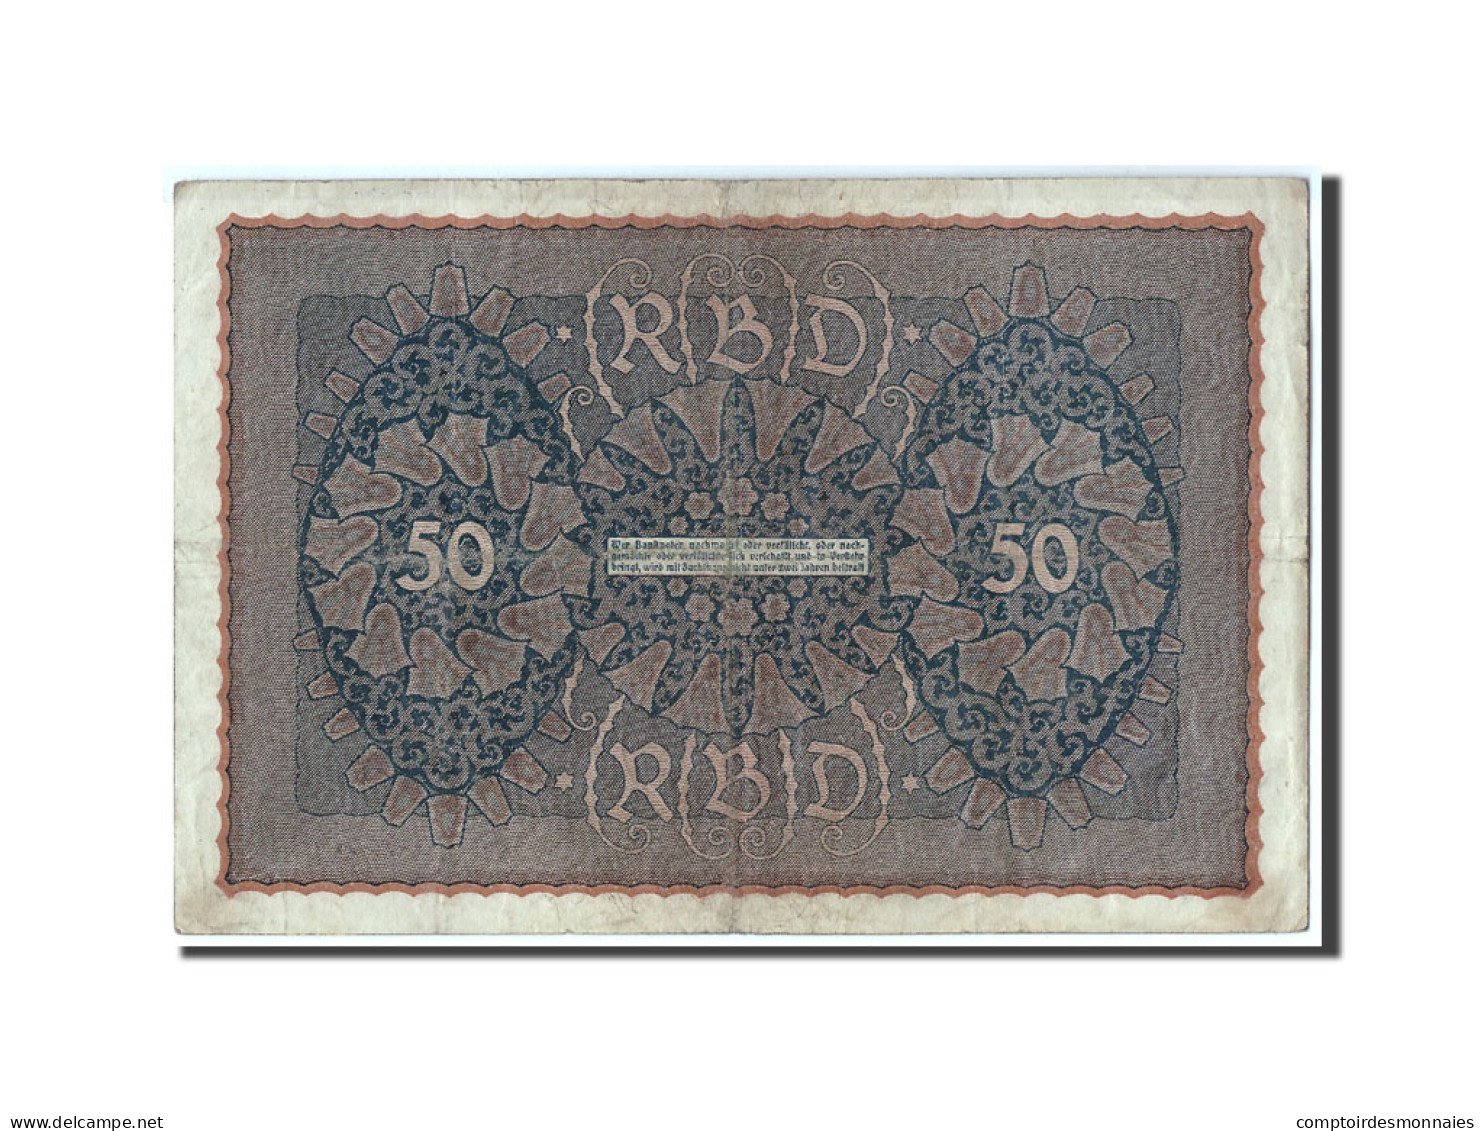 Billet, Allemagne, 50 Mark, 1919, 1919-06-24, KM:66, TB - 50 Mark